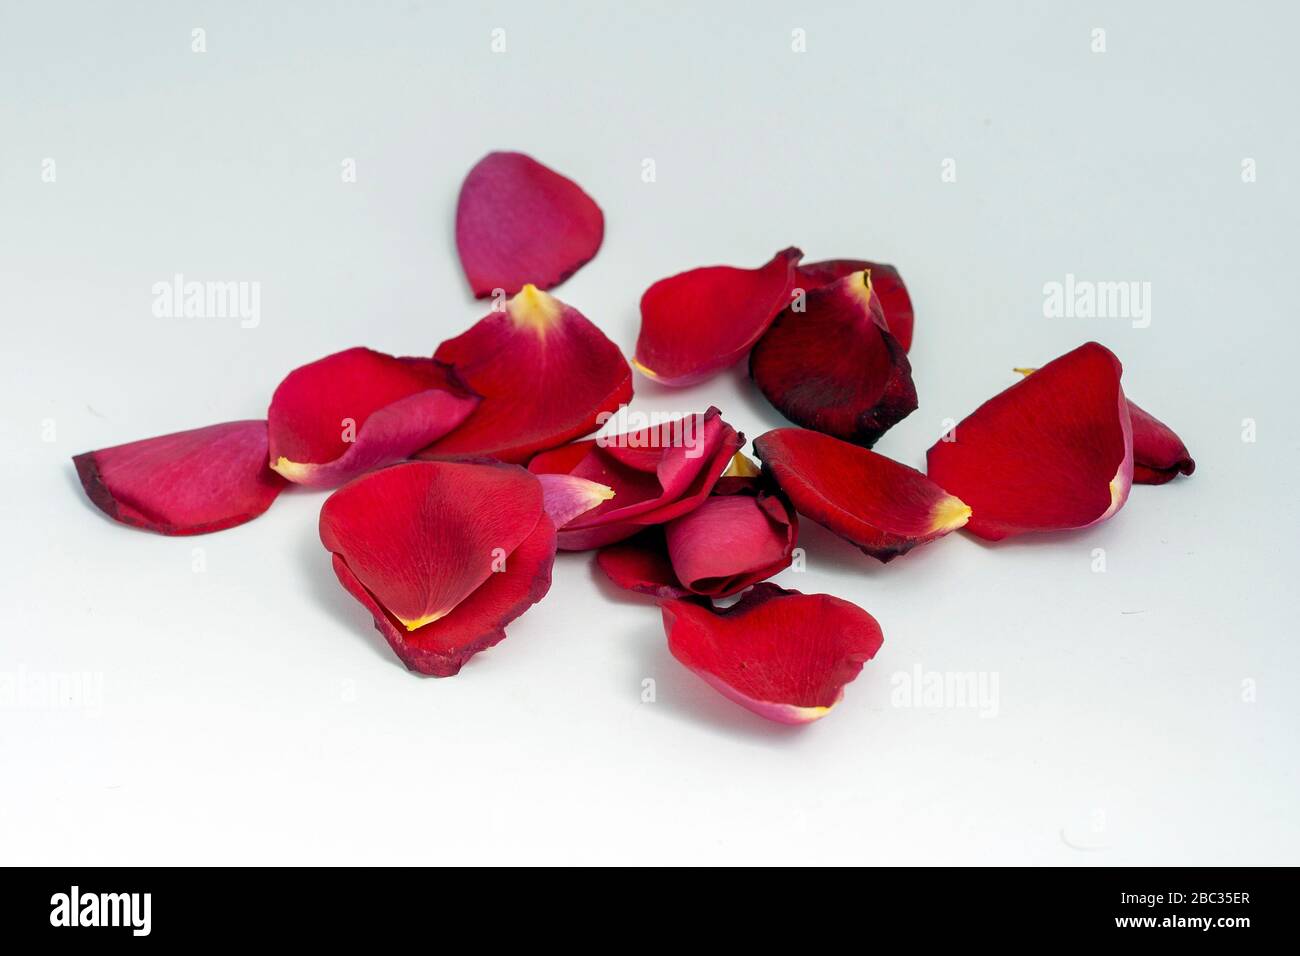 Real rose petals